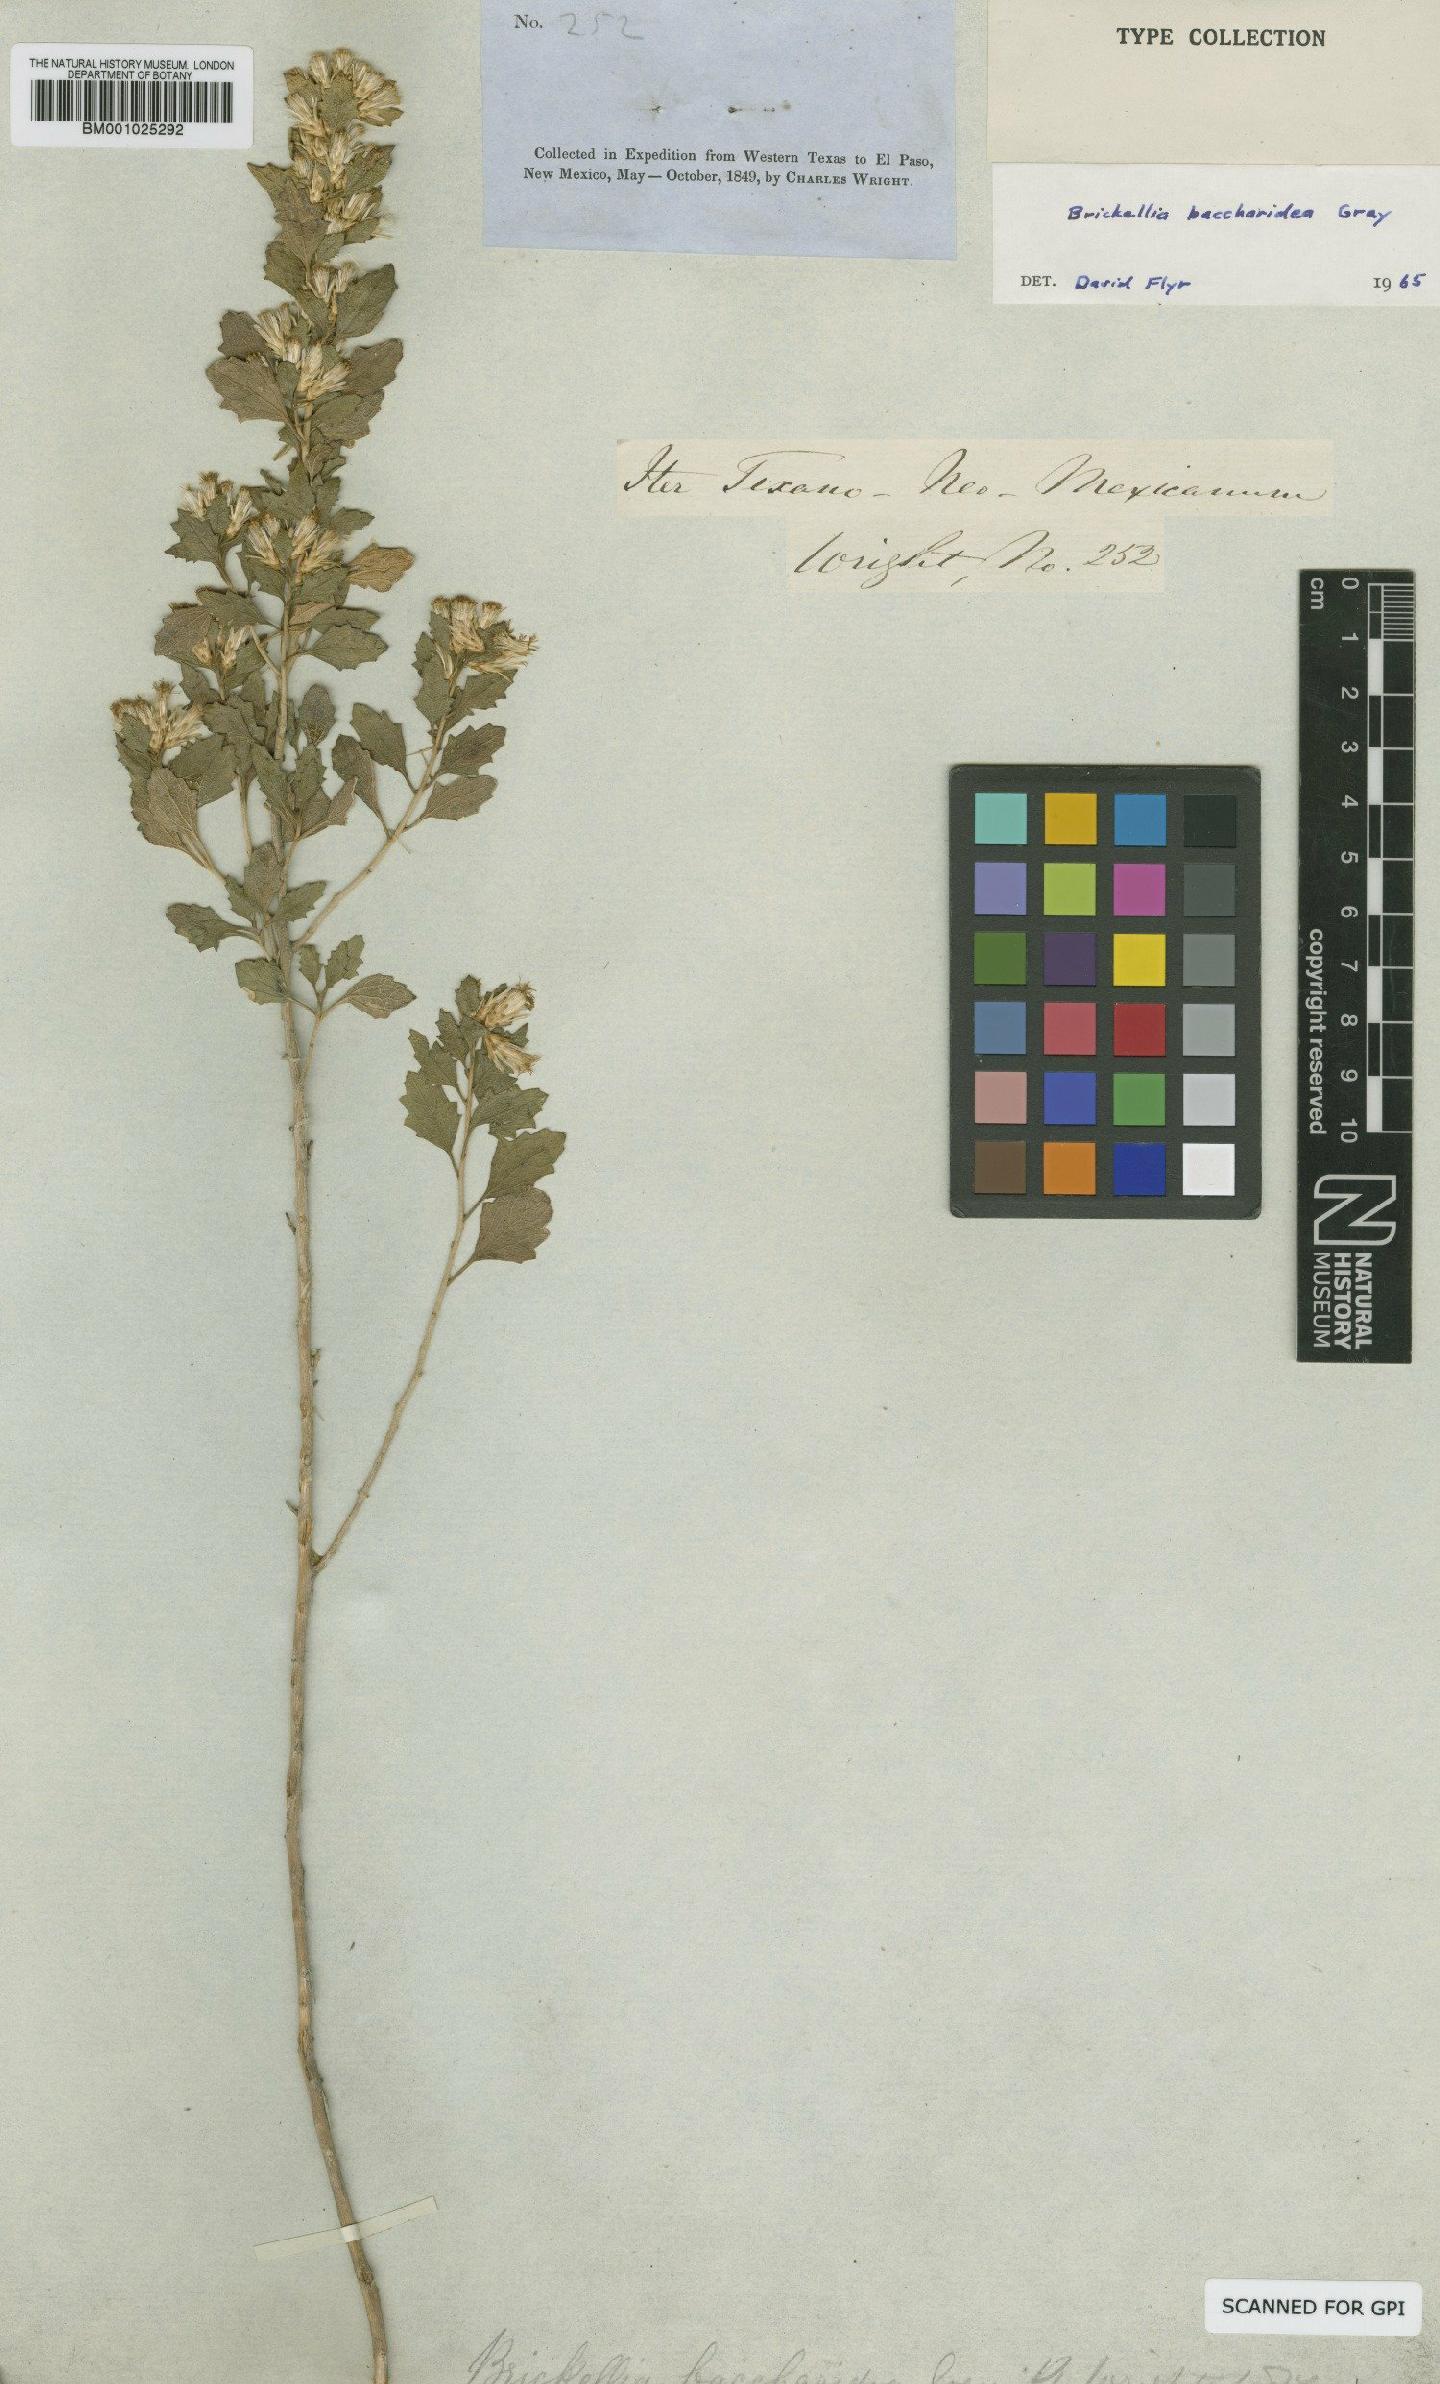 To NHMUK collection (Brickellia baccharidea A.Gray; Type; NHMUK:ecatalogue:745575)